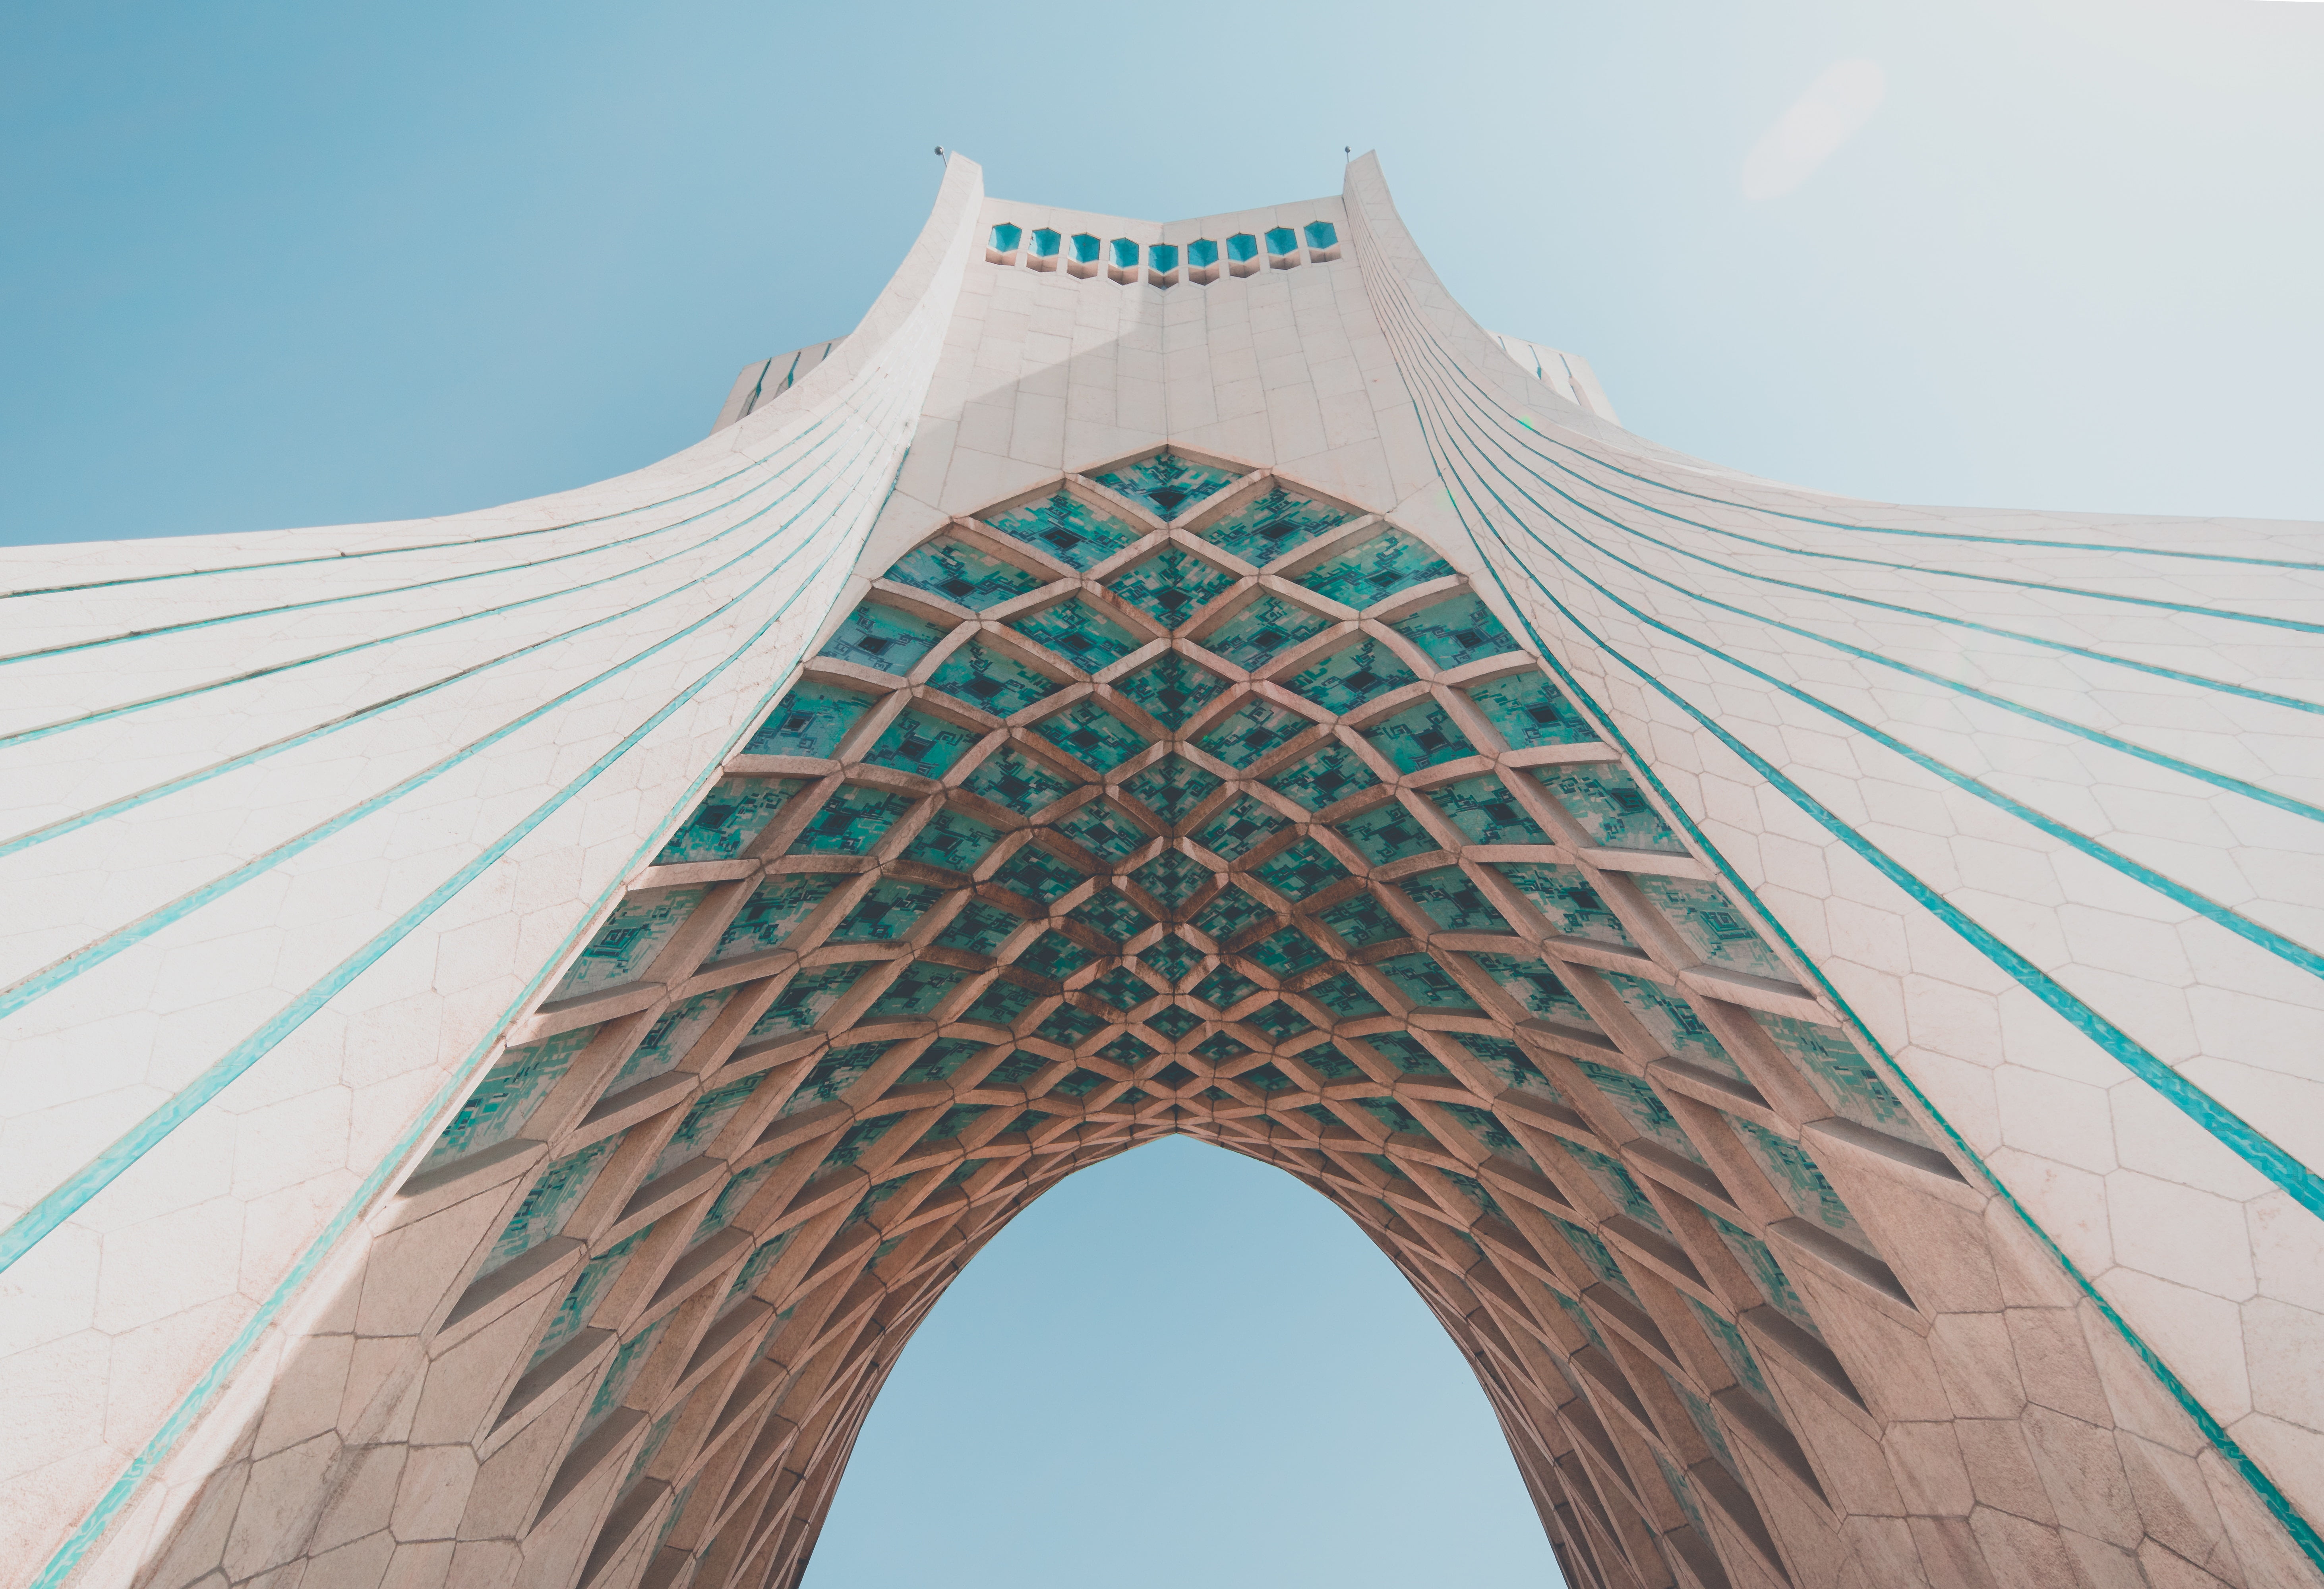 Iran, Tehran, architecture